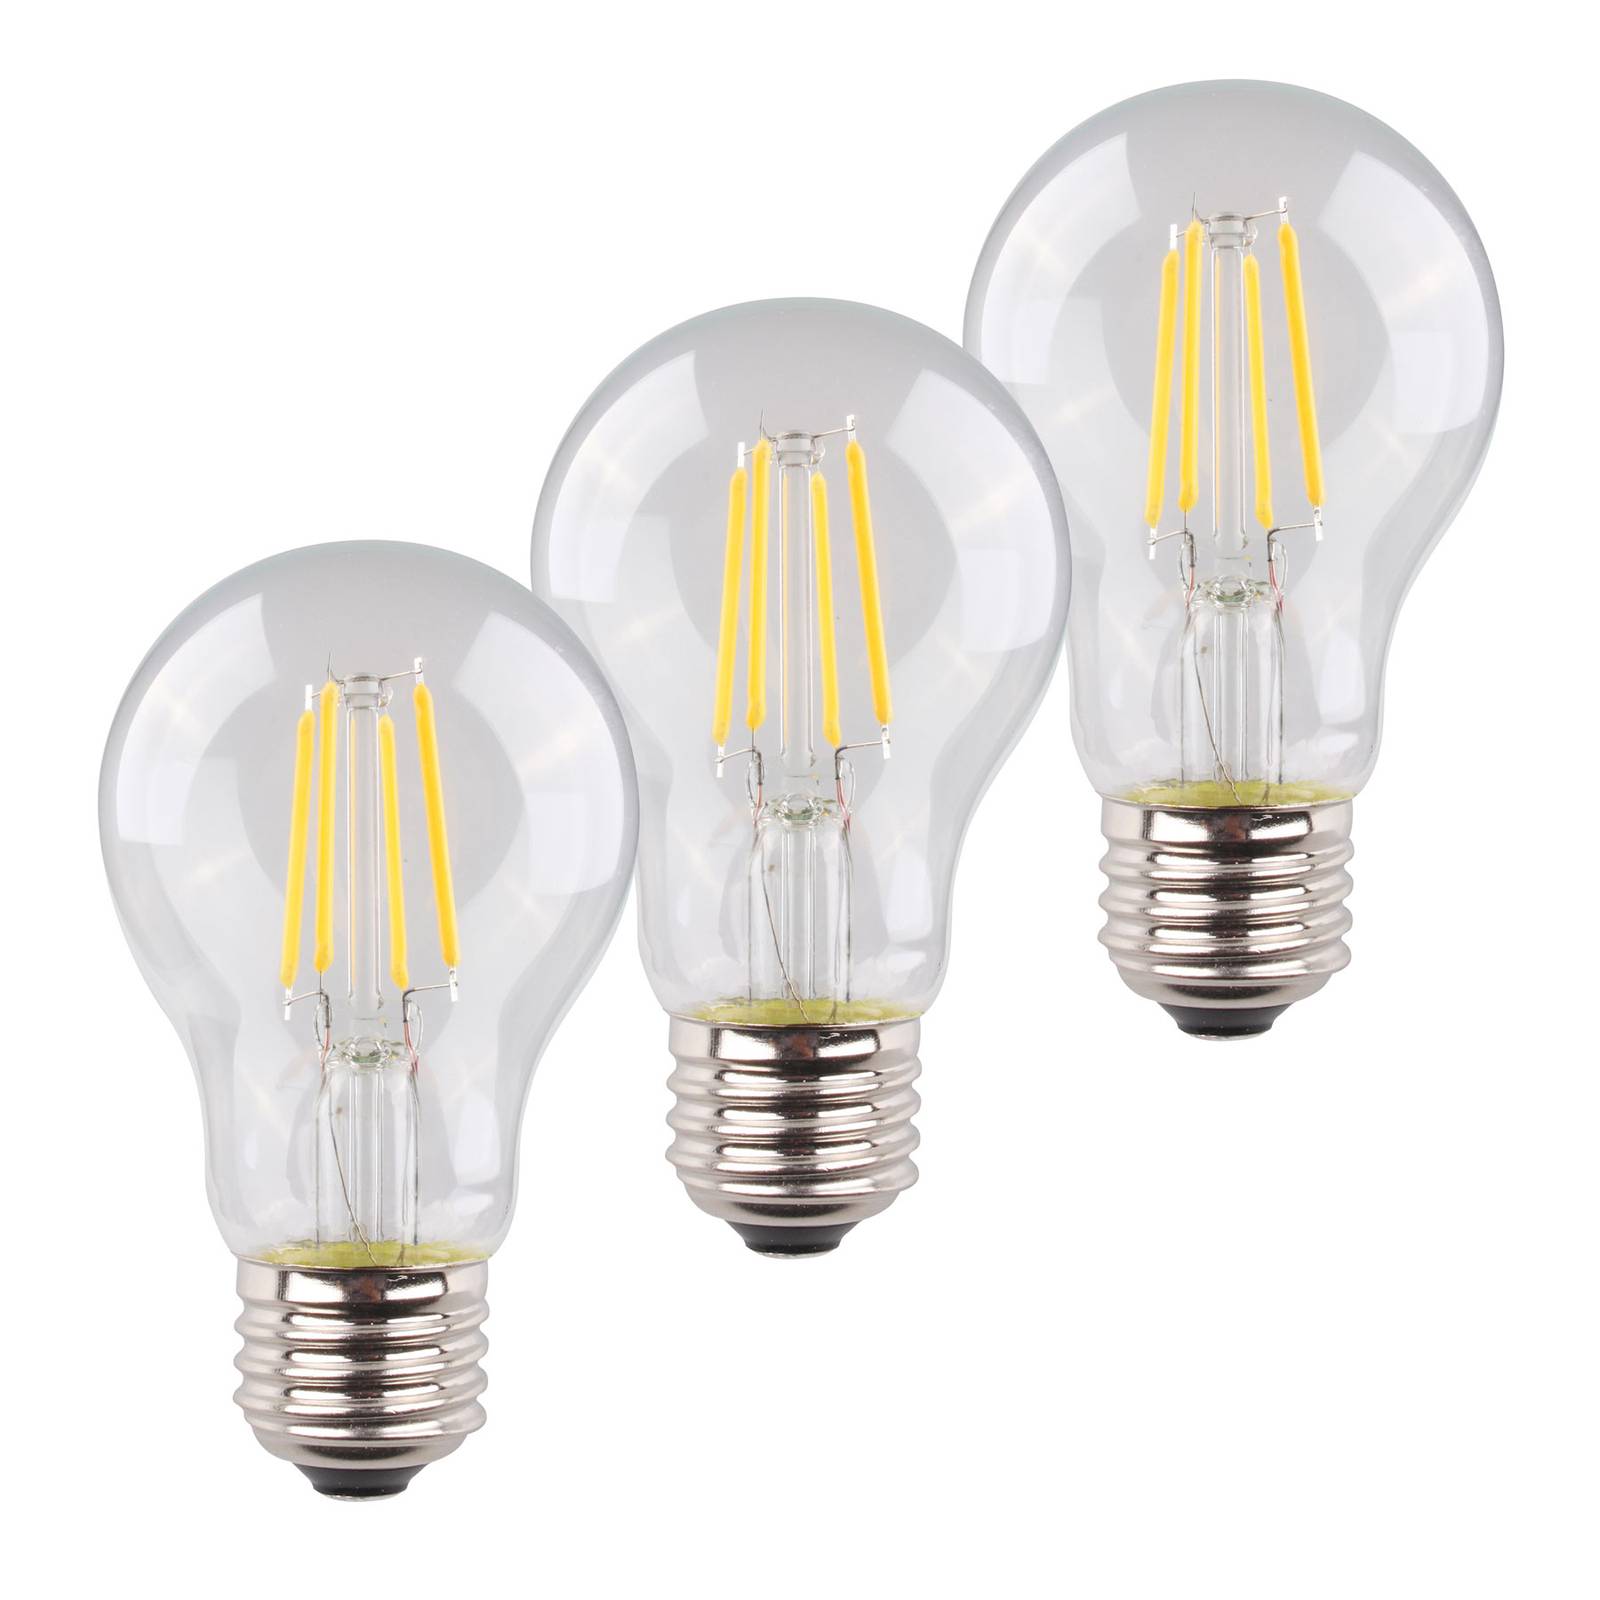 Müller-Licht LED-Lampe E27 4W 2.700K Filament 3erSet, 470lm